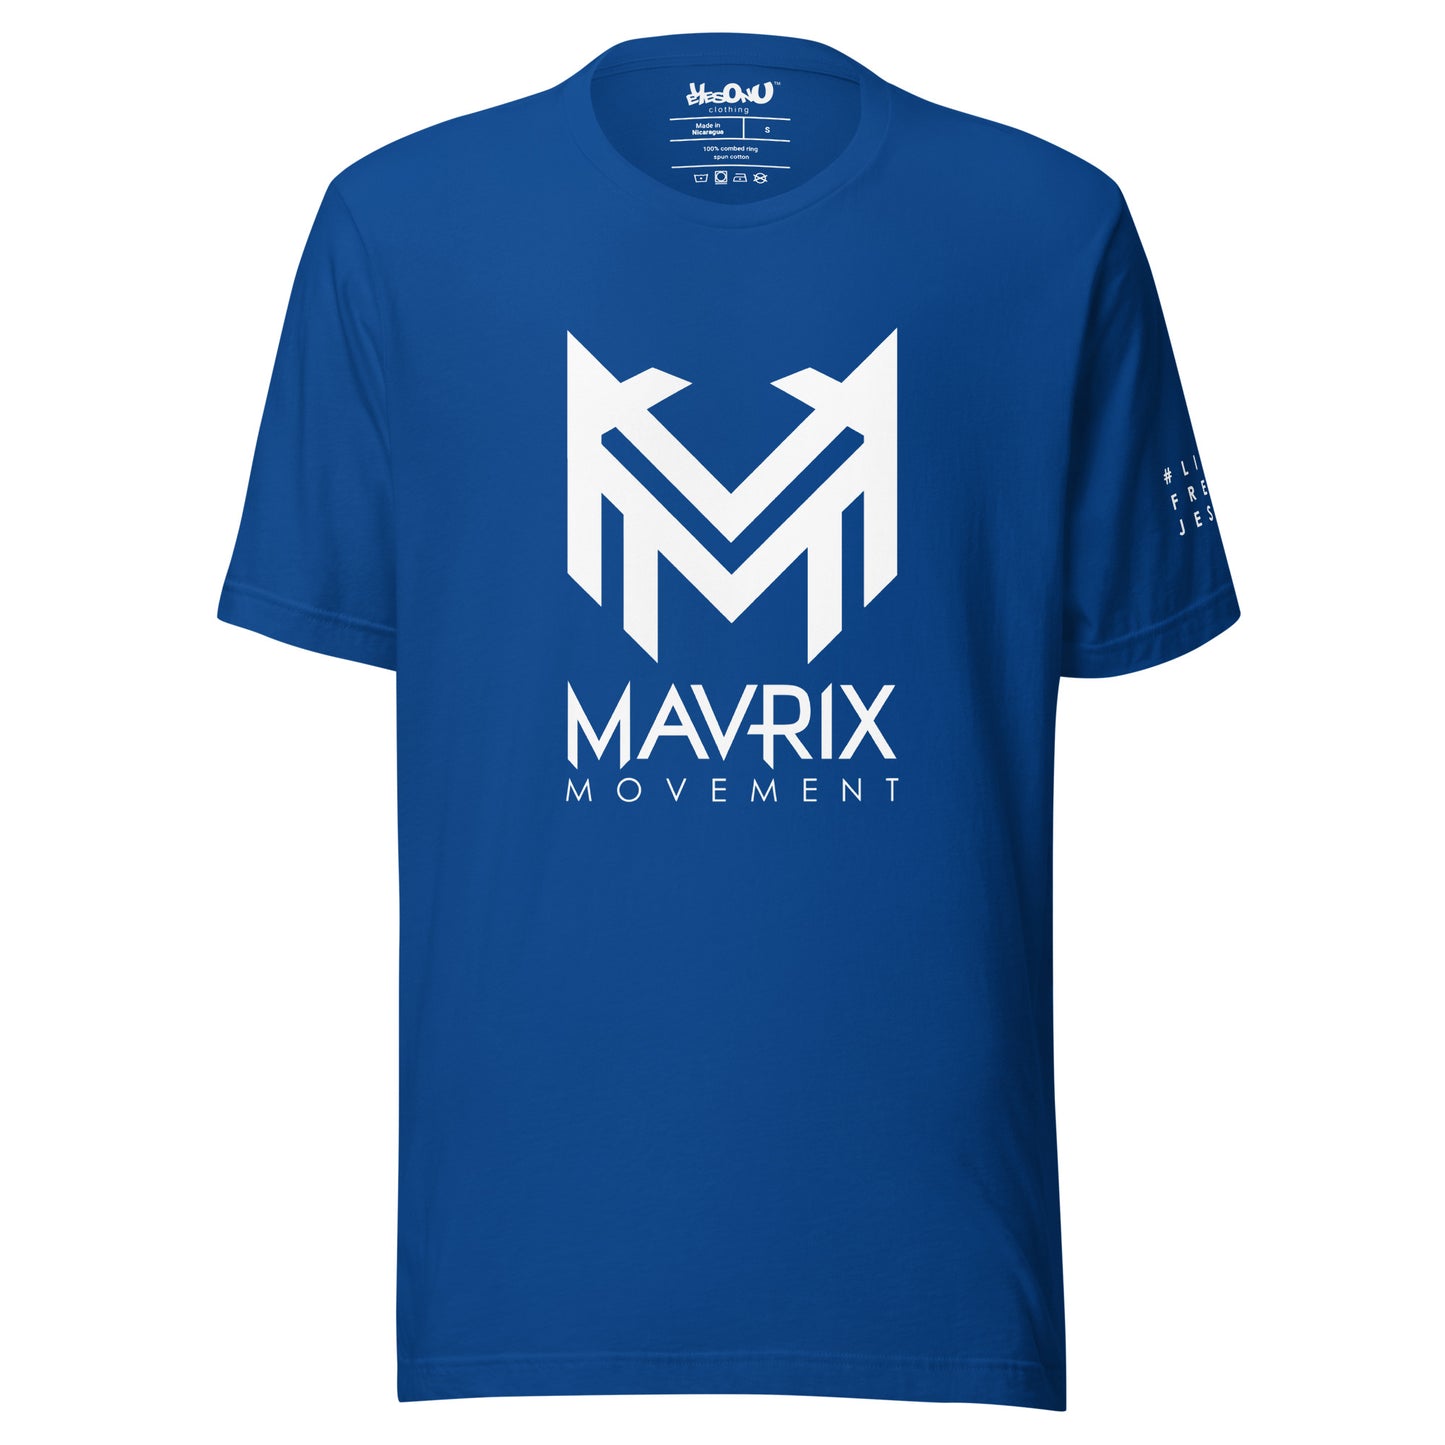 Mavrix Signature T-Shirt (12 colors)